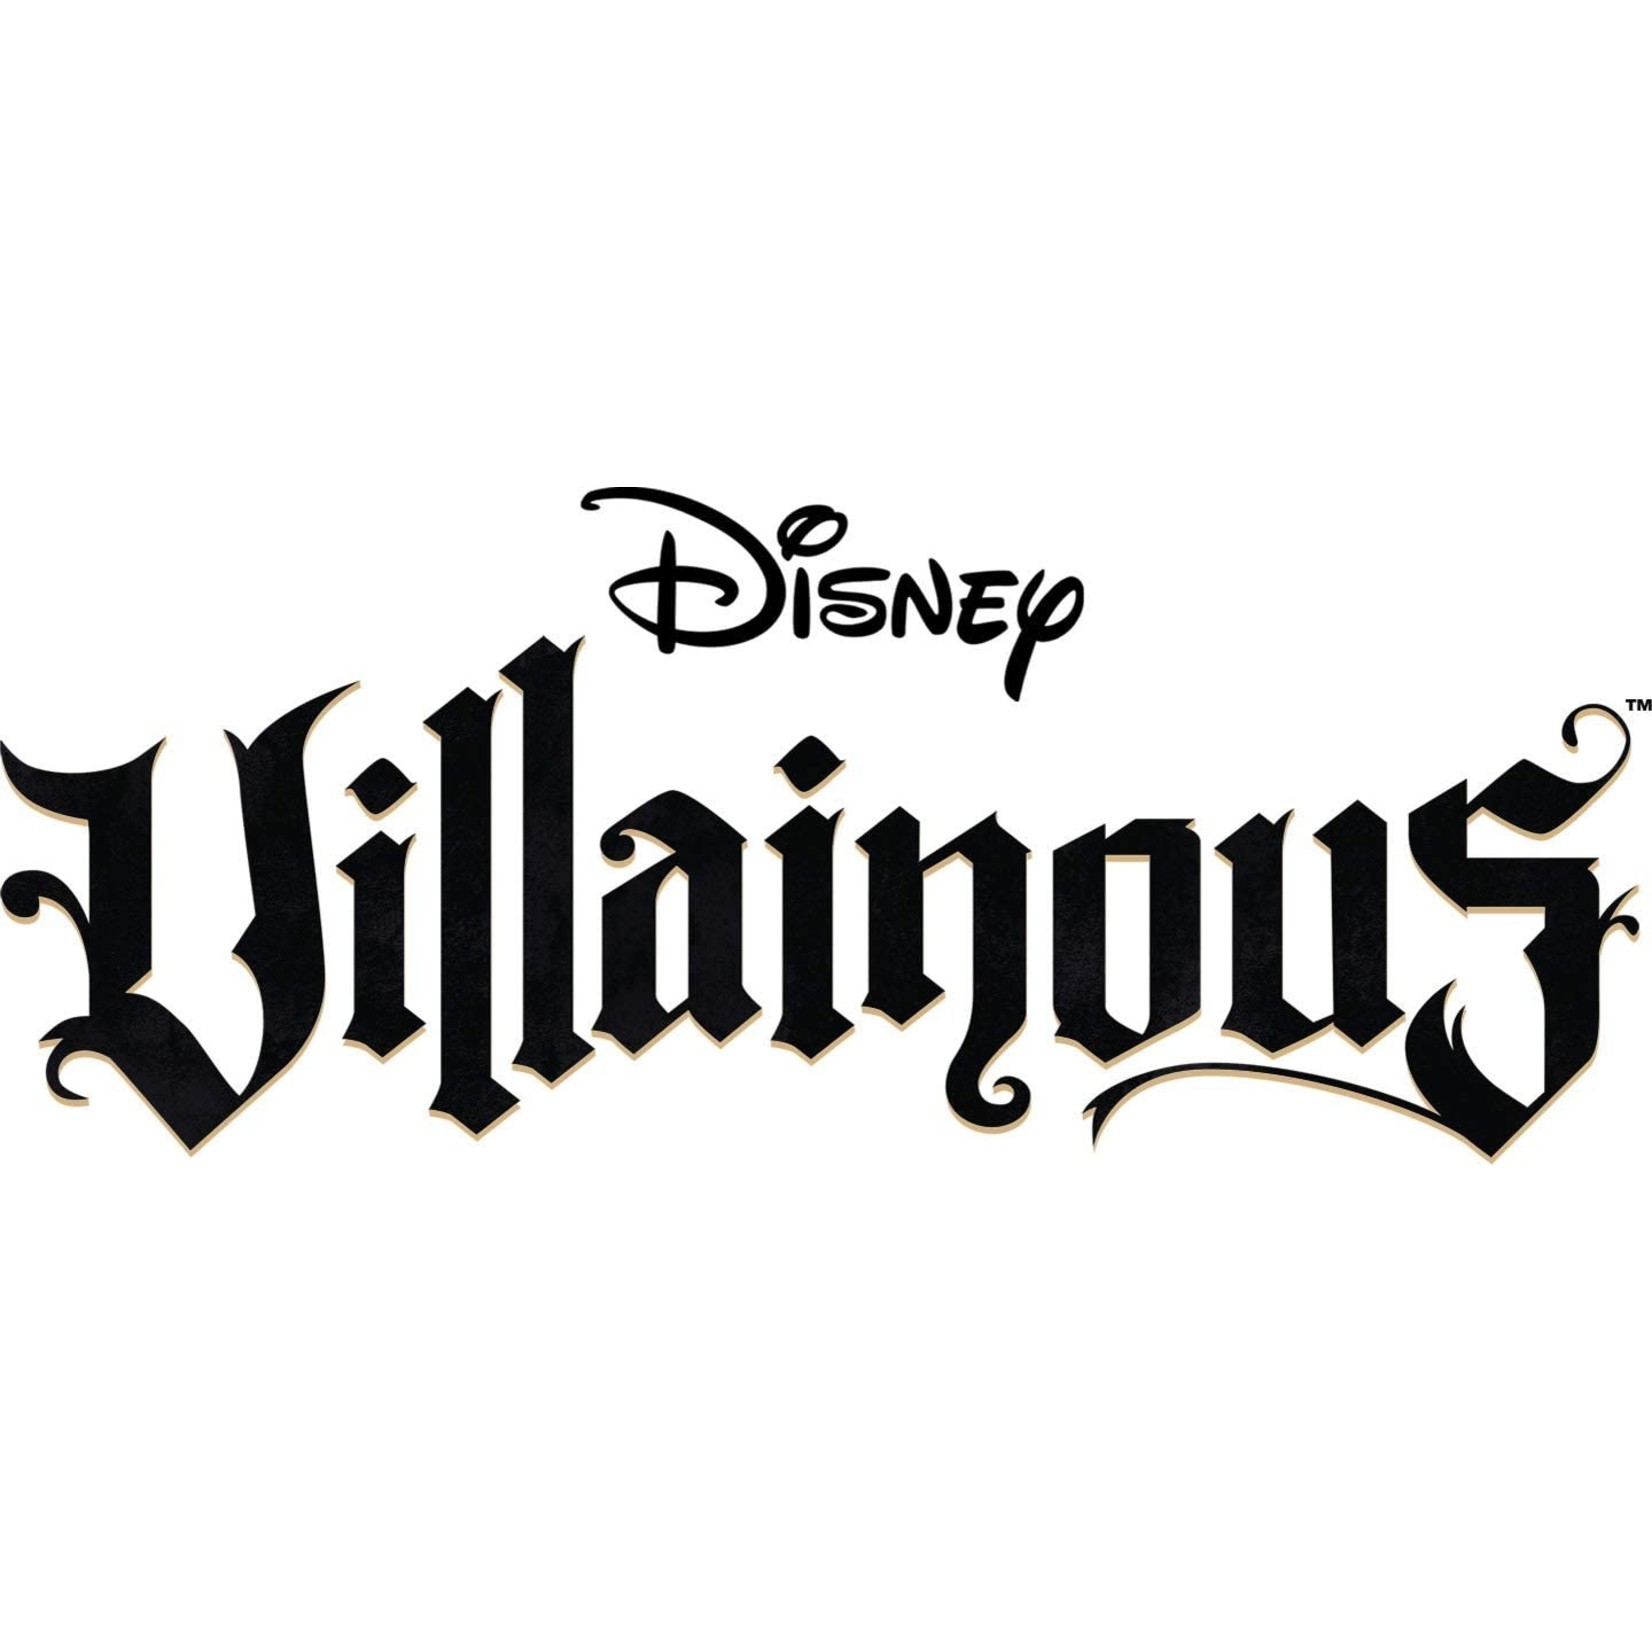 Disney Villainous Disney Villainous - Queen of Hearts Puzzle 1000pcs Jigsaw